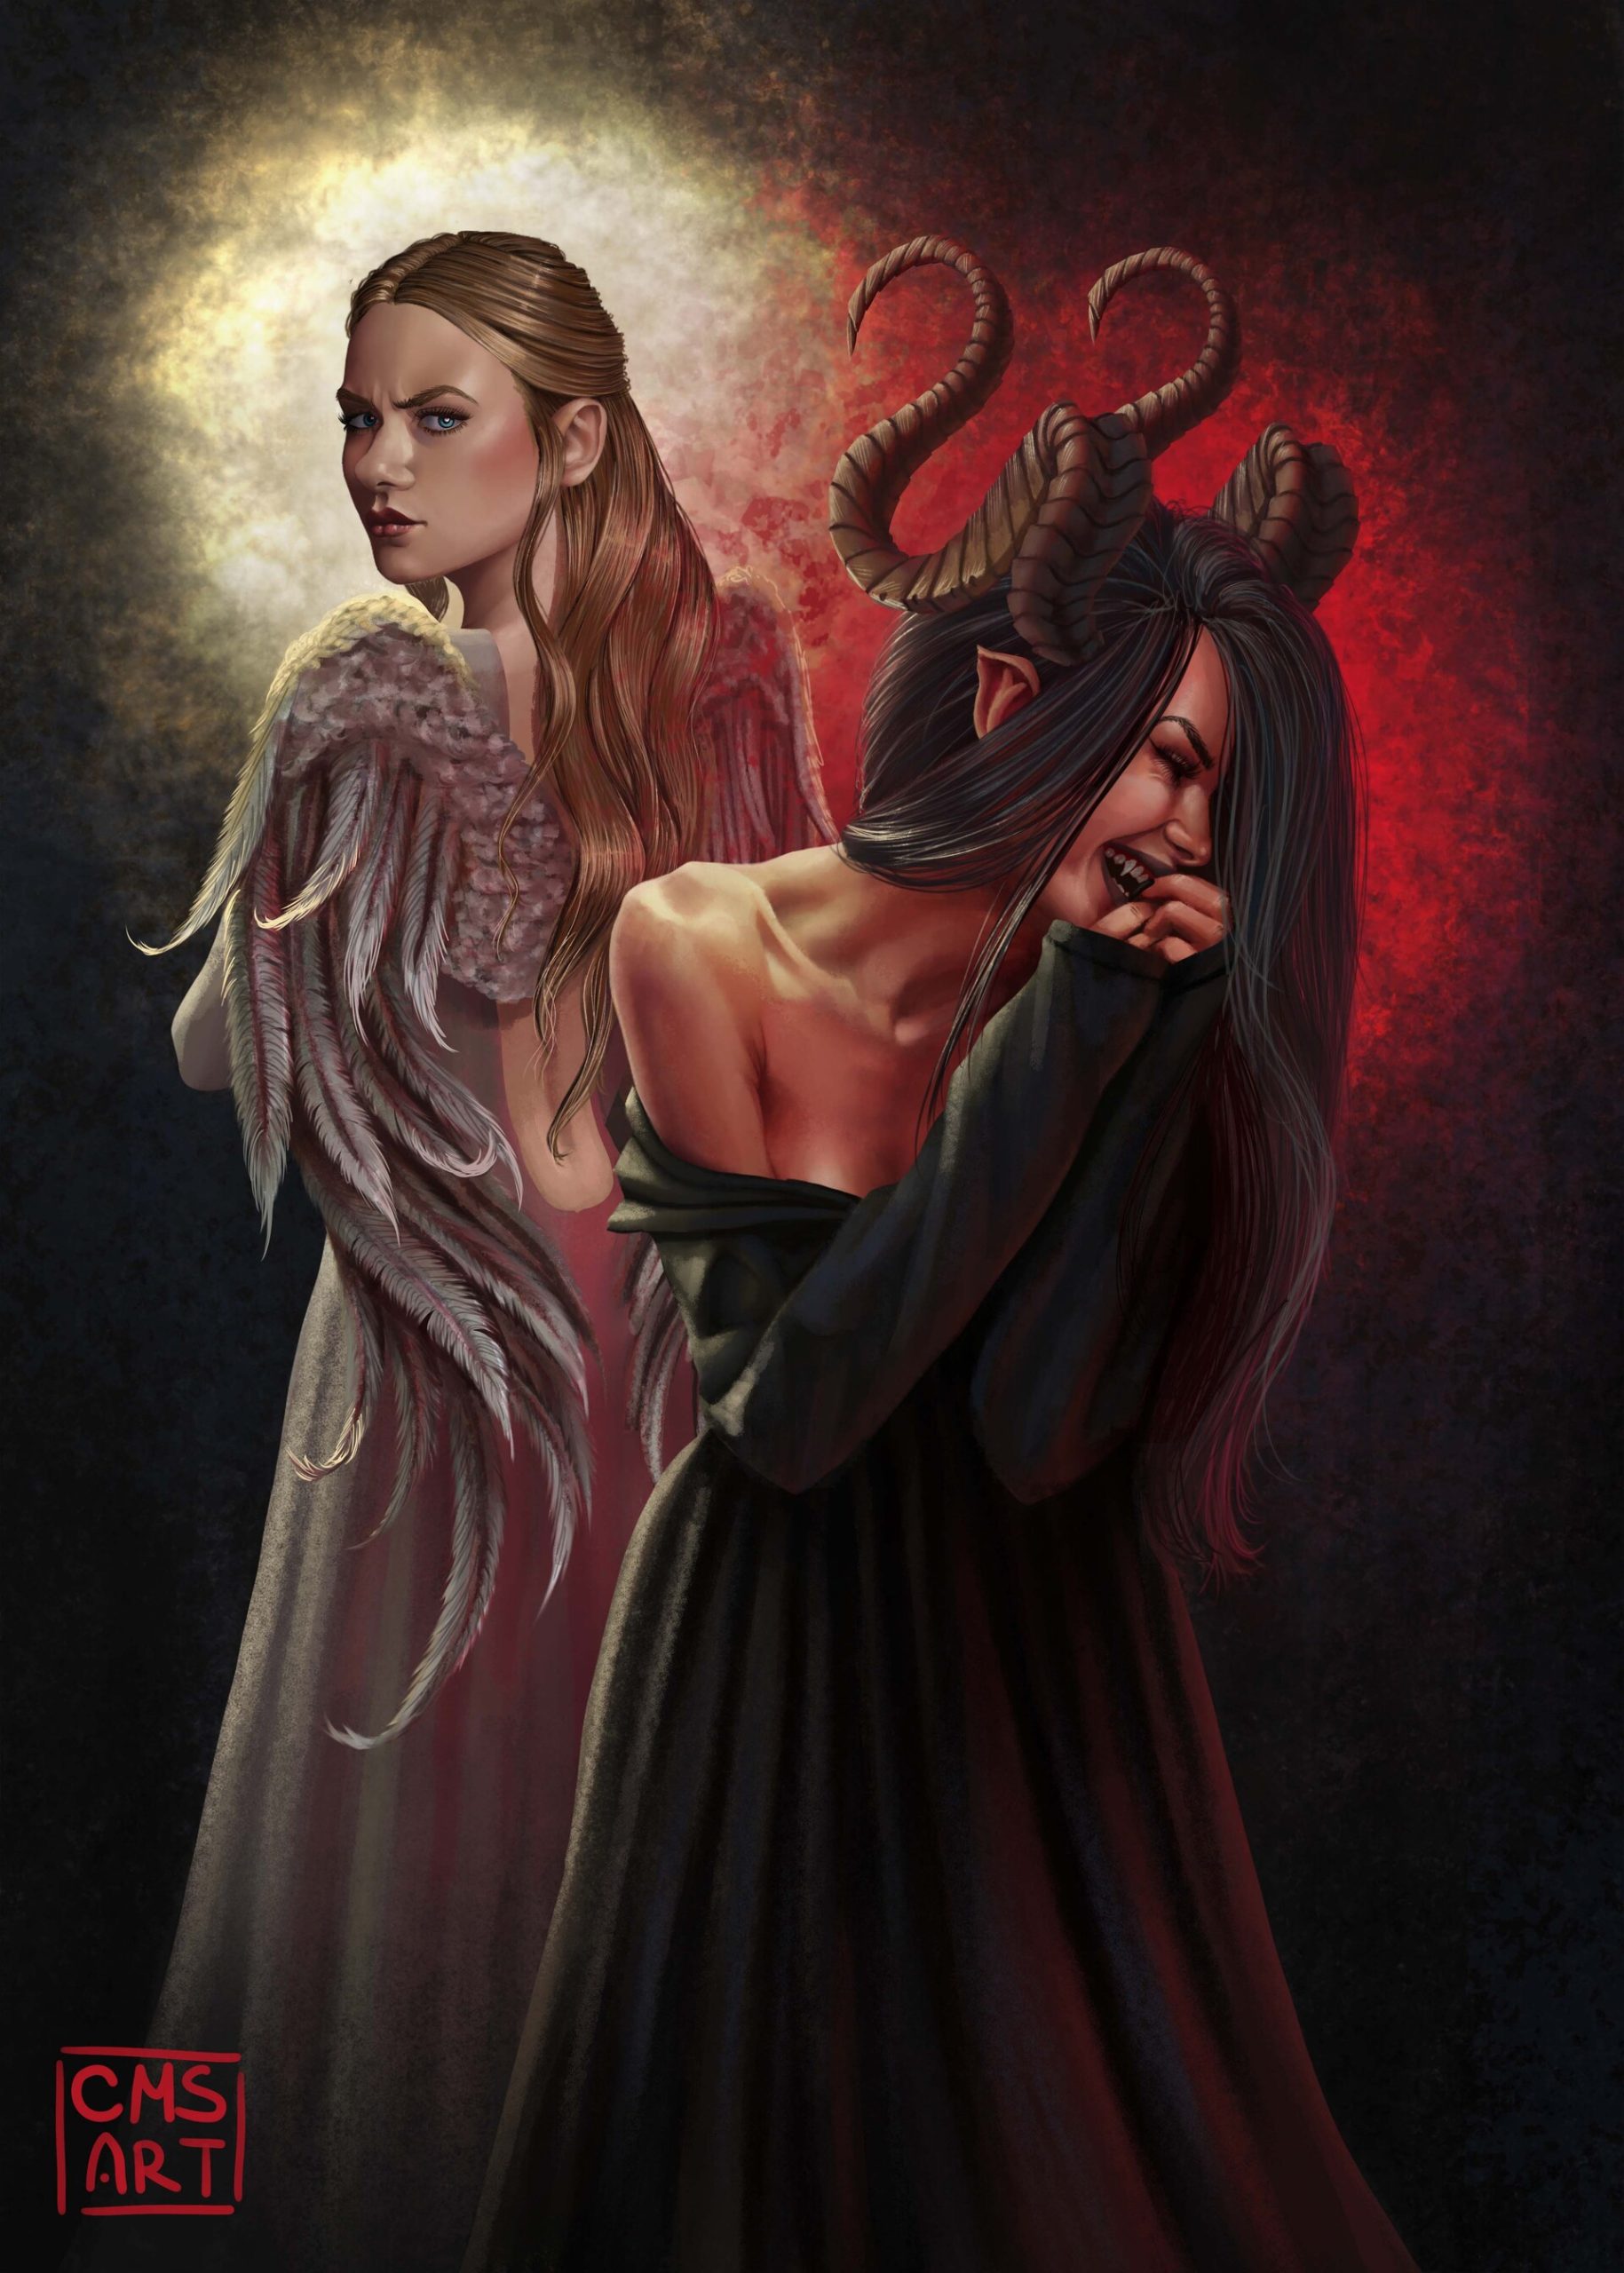 When Demons Antagonize Angels by Caitlin Schladweiler